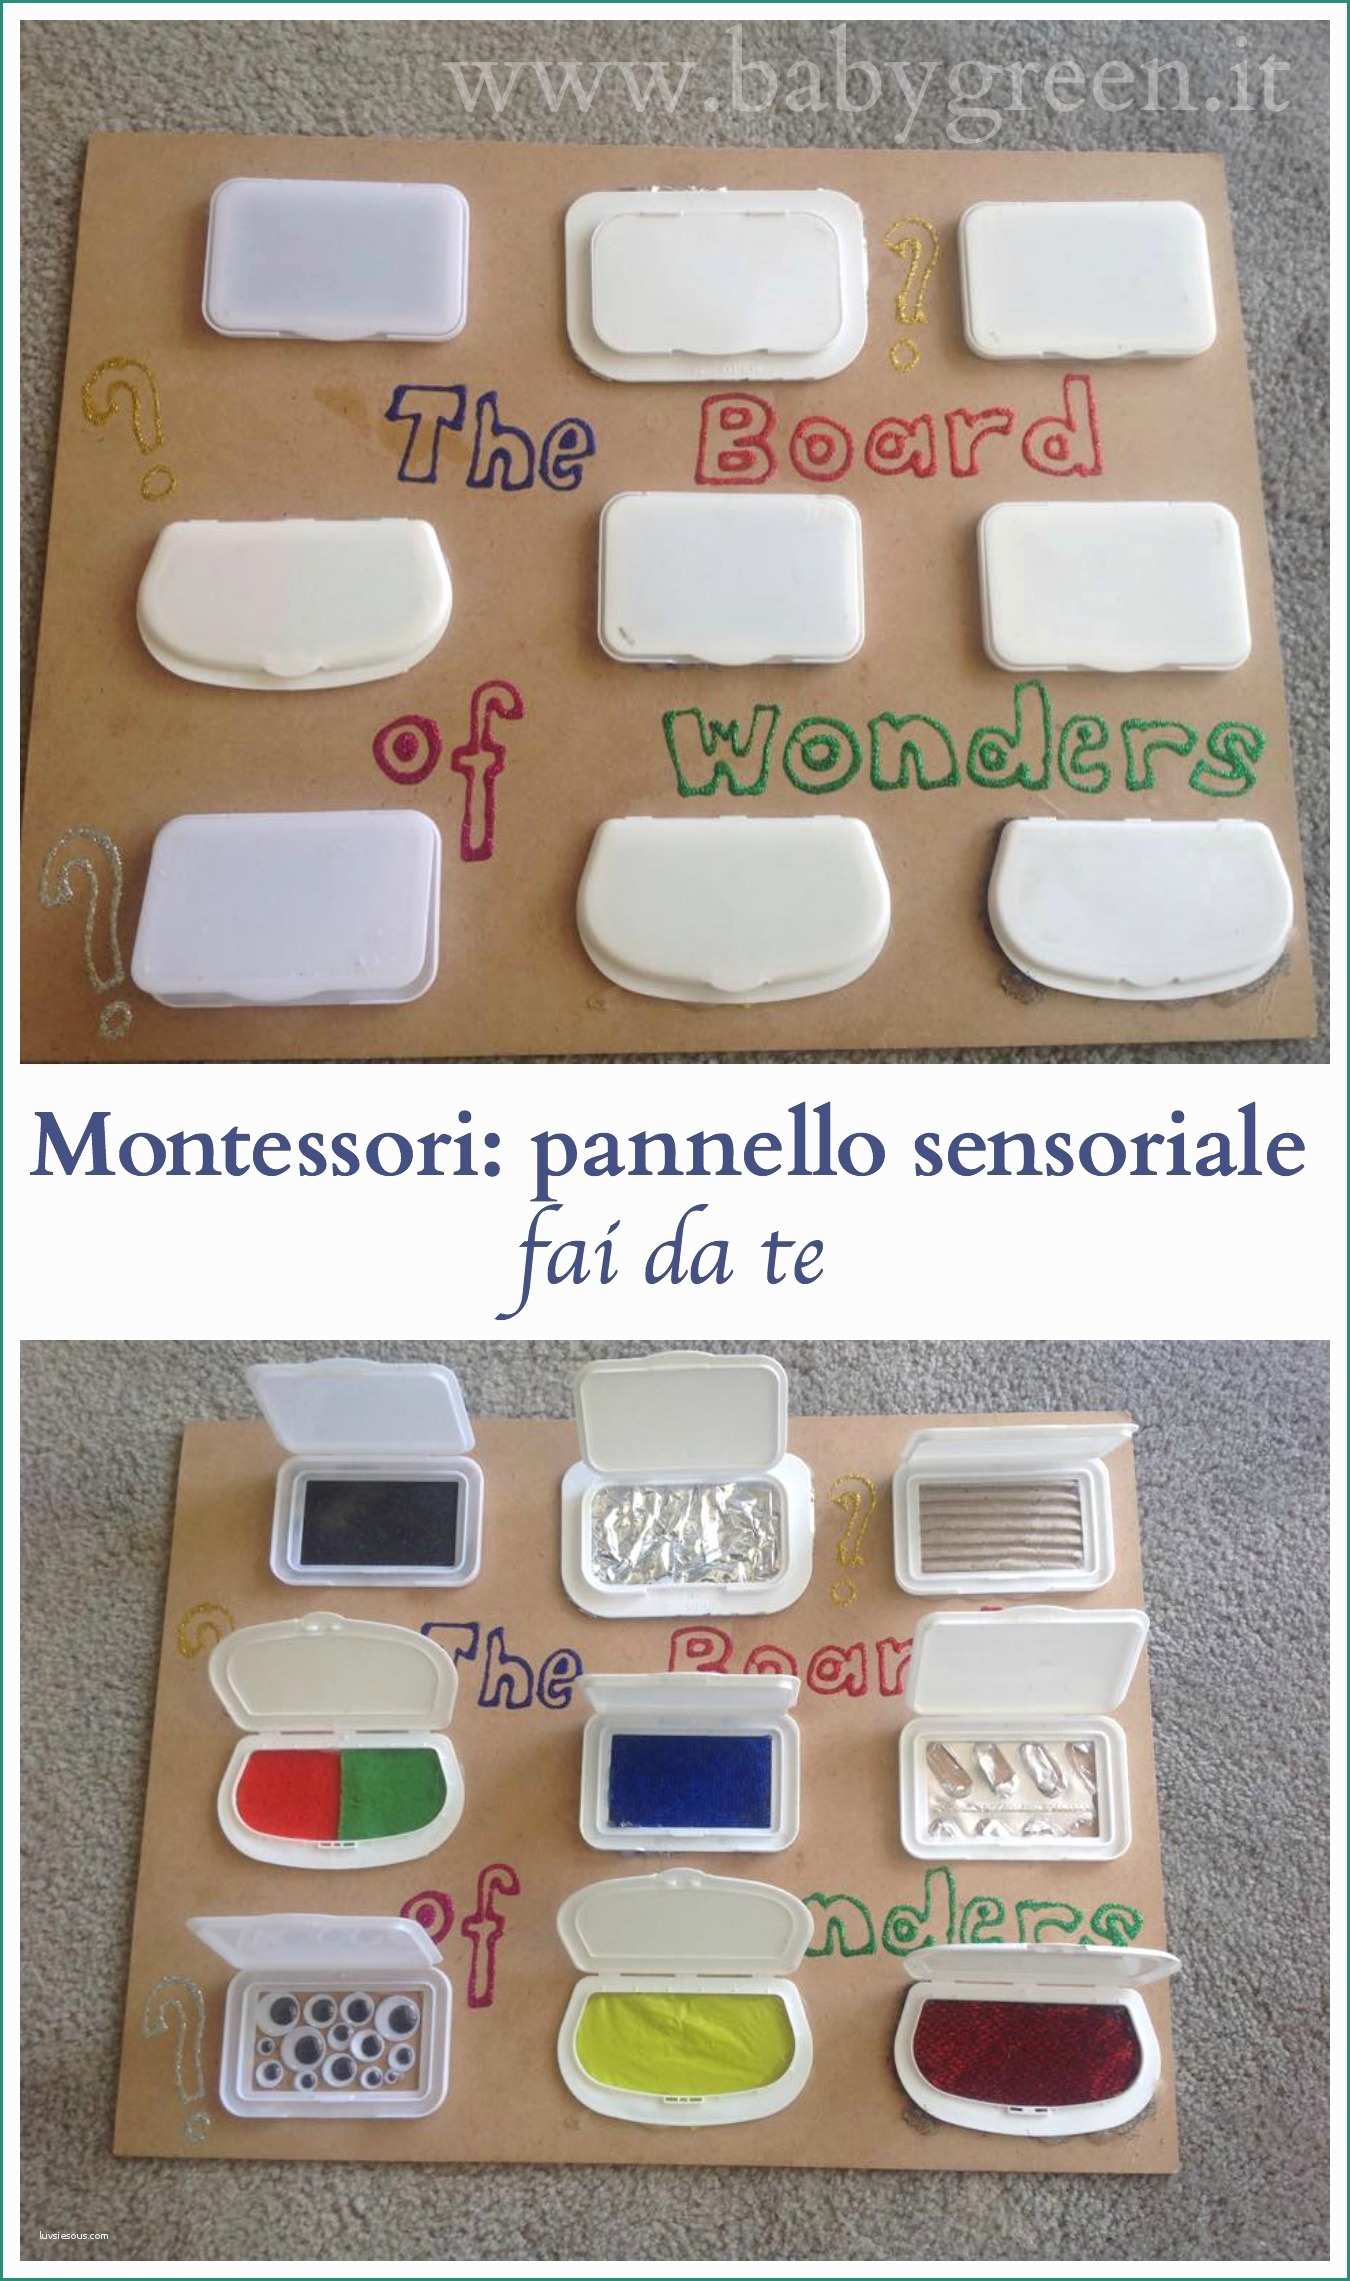 Pannelli Divisori Fai Da Te E Montessori Pannello Sensoriale Fai Da Te Babygreen